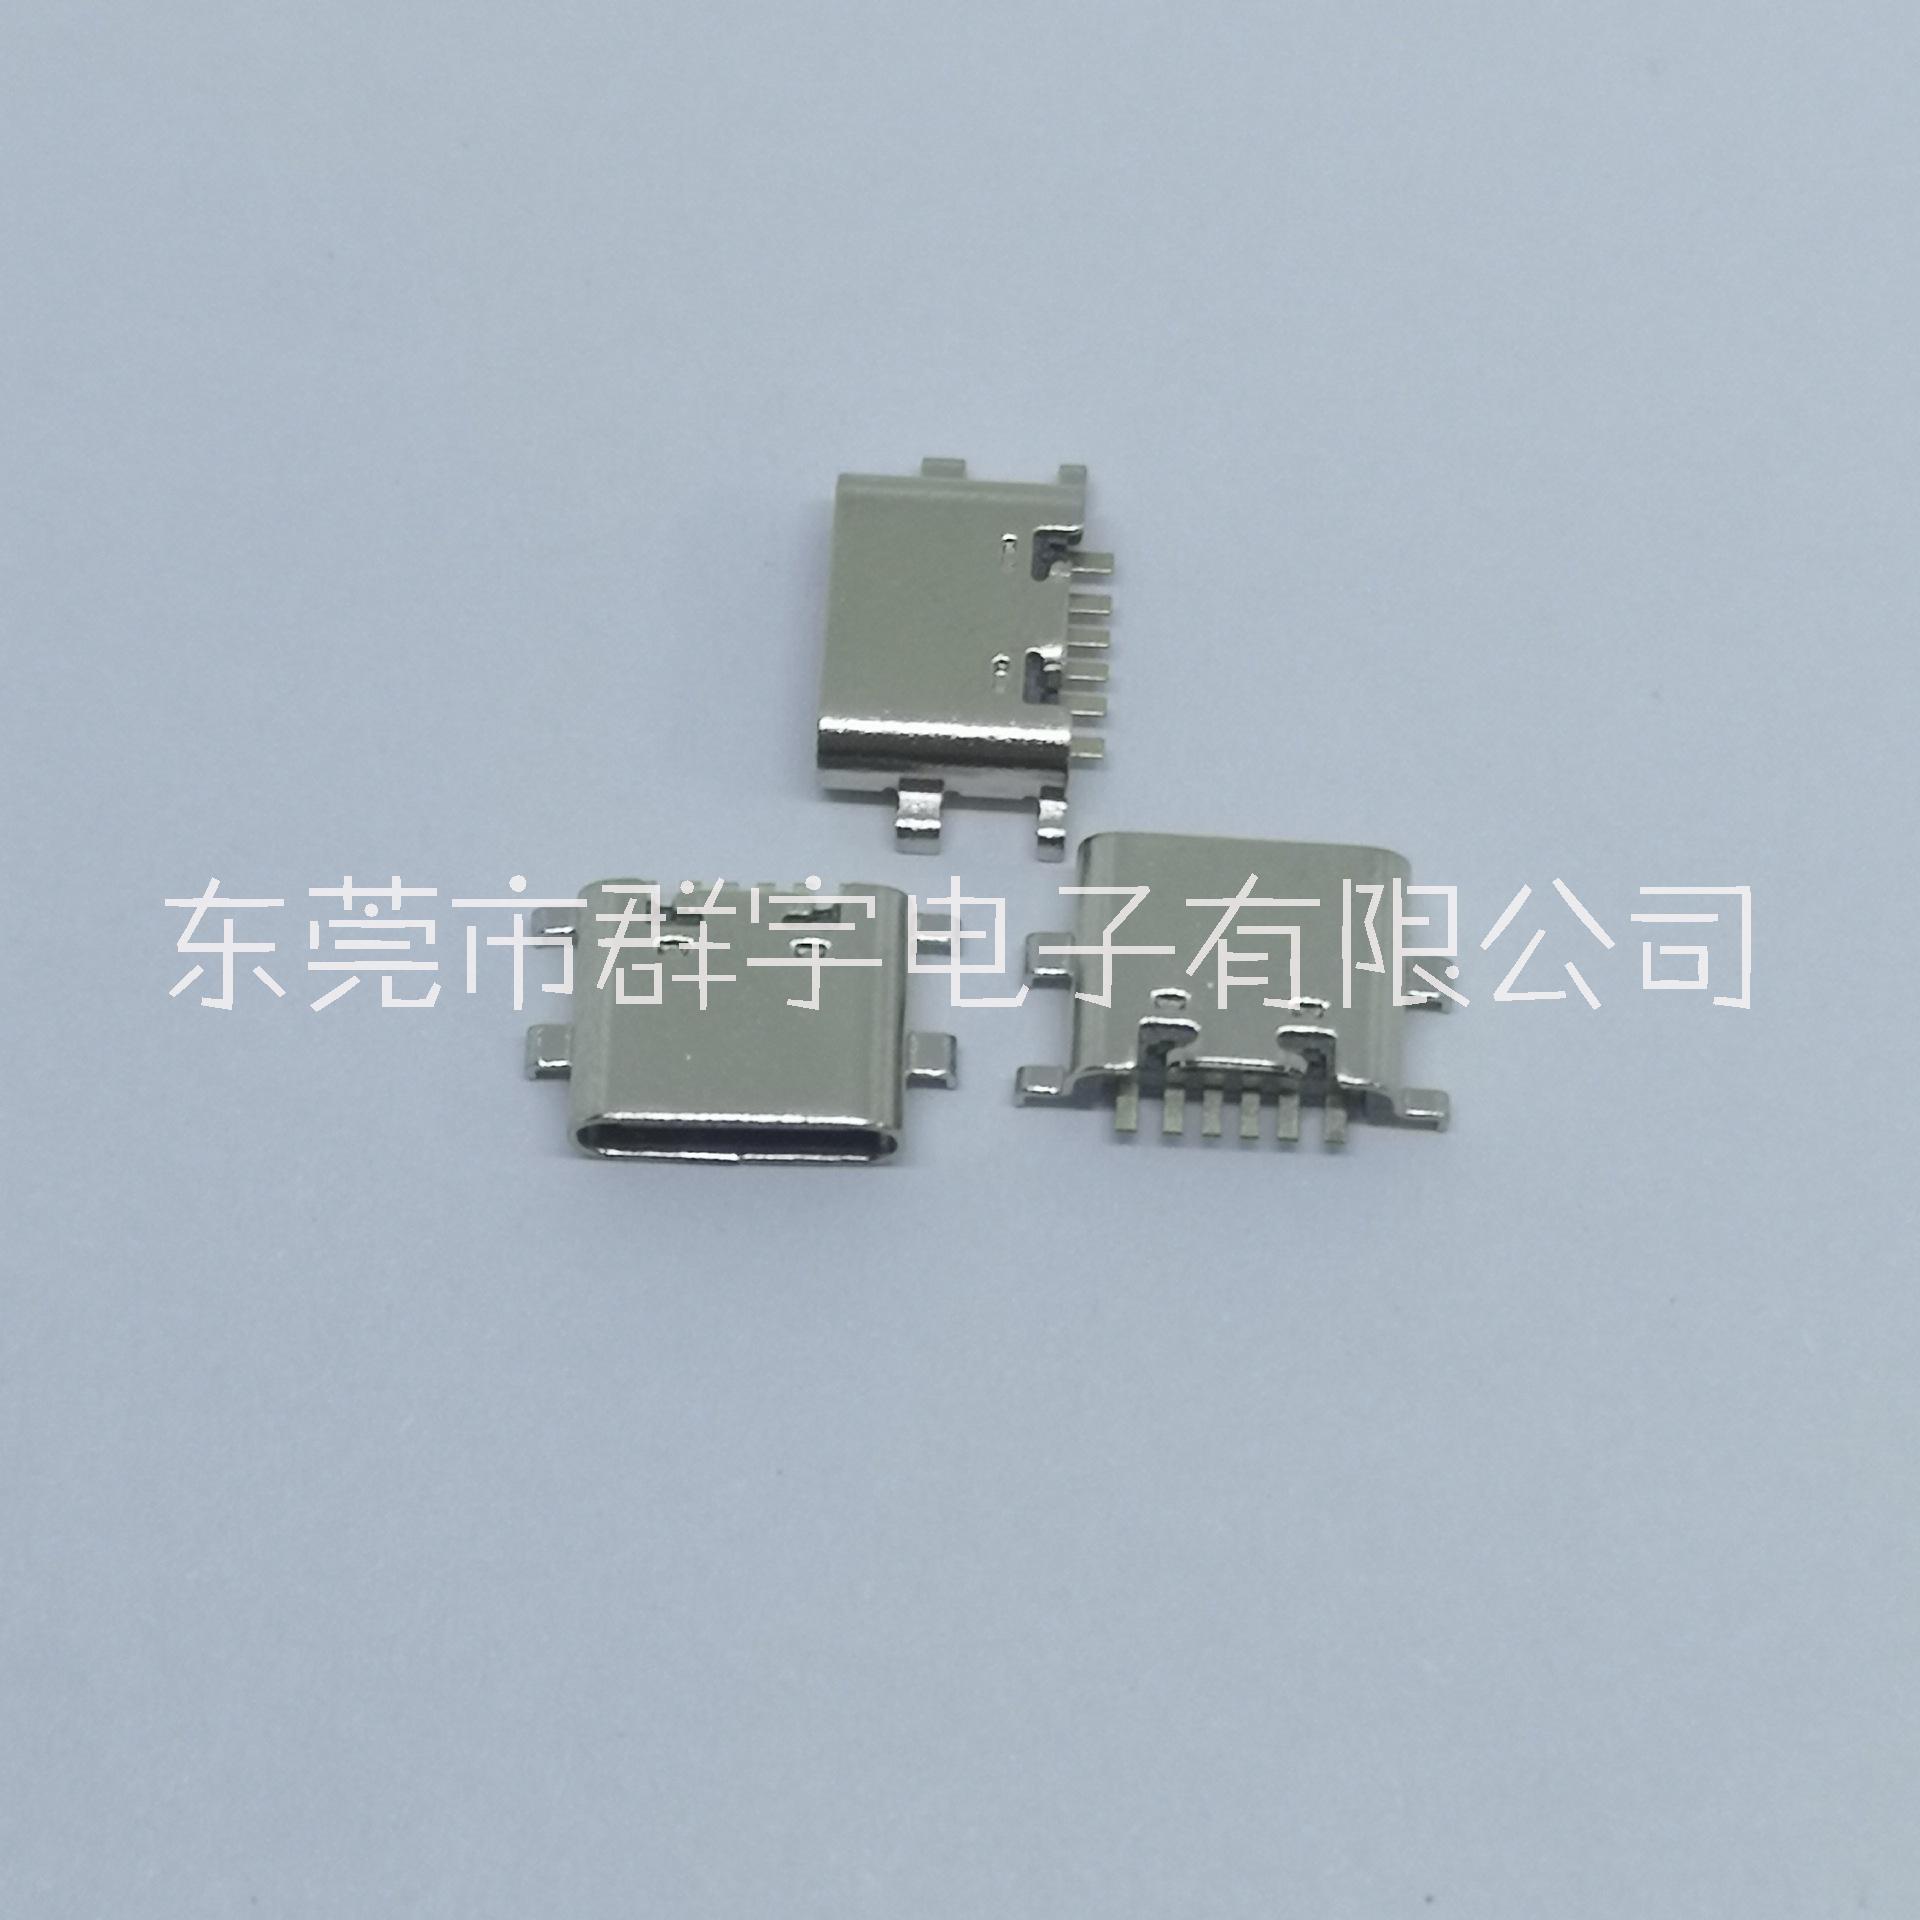 Type-c母座厂家直销 6P沉板0.8短体6.8 无线充移动电源 USB连接器厂家